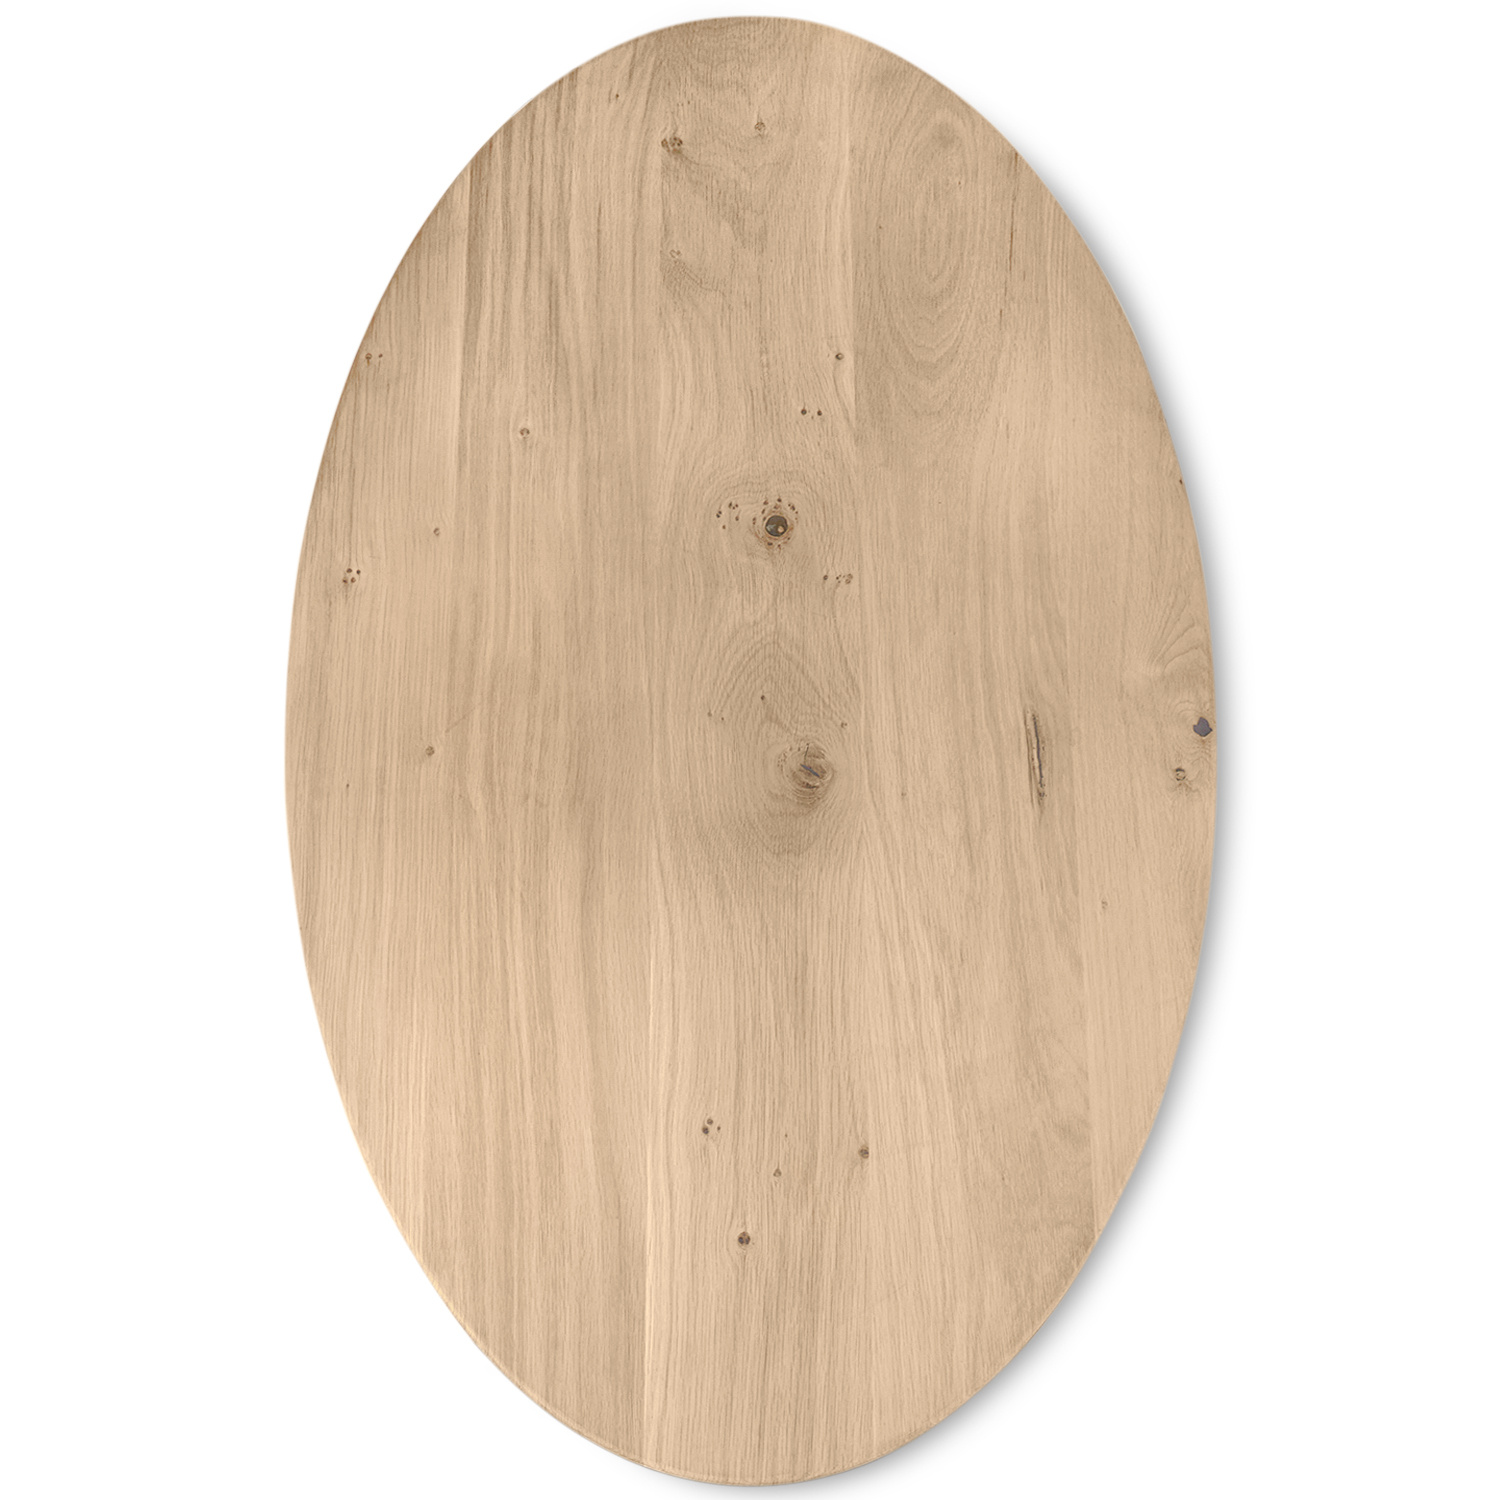  Ovaal eiken tafelblad - 3 cm dik (1-laag) - Diverse afmetingen - extra rustiek Europees eikenhout - met extra brede lamellen (circa 14-20 cm) - verlijmd kd 8-12%